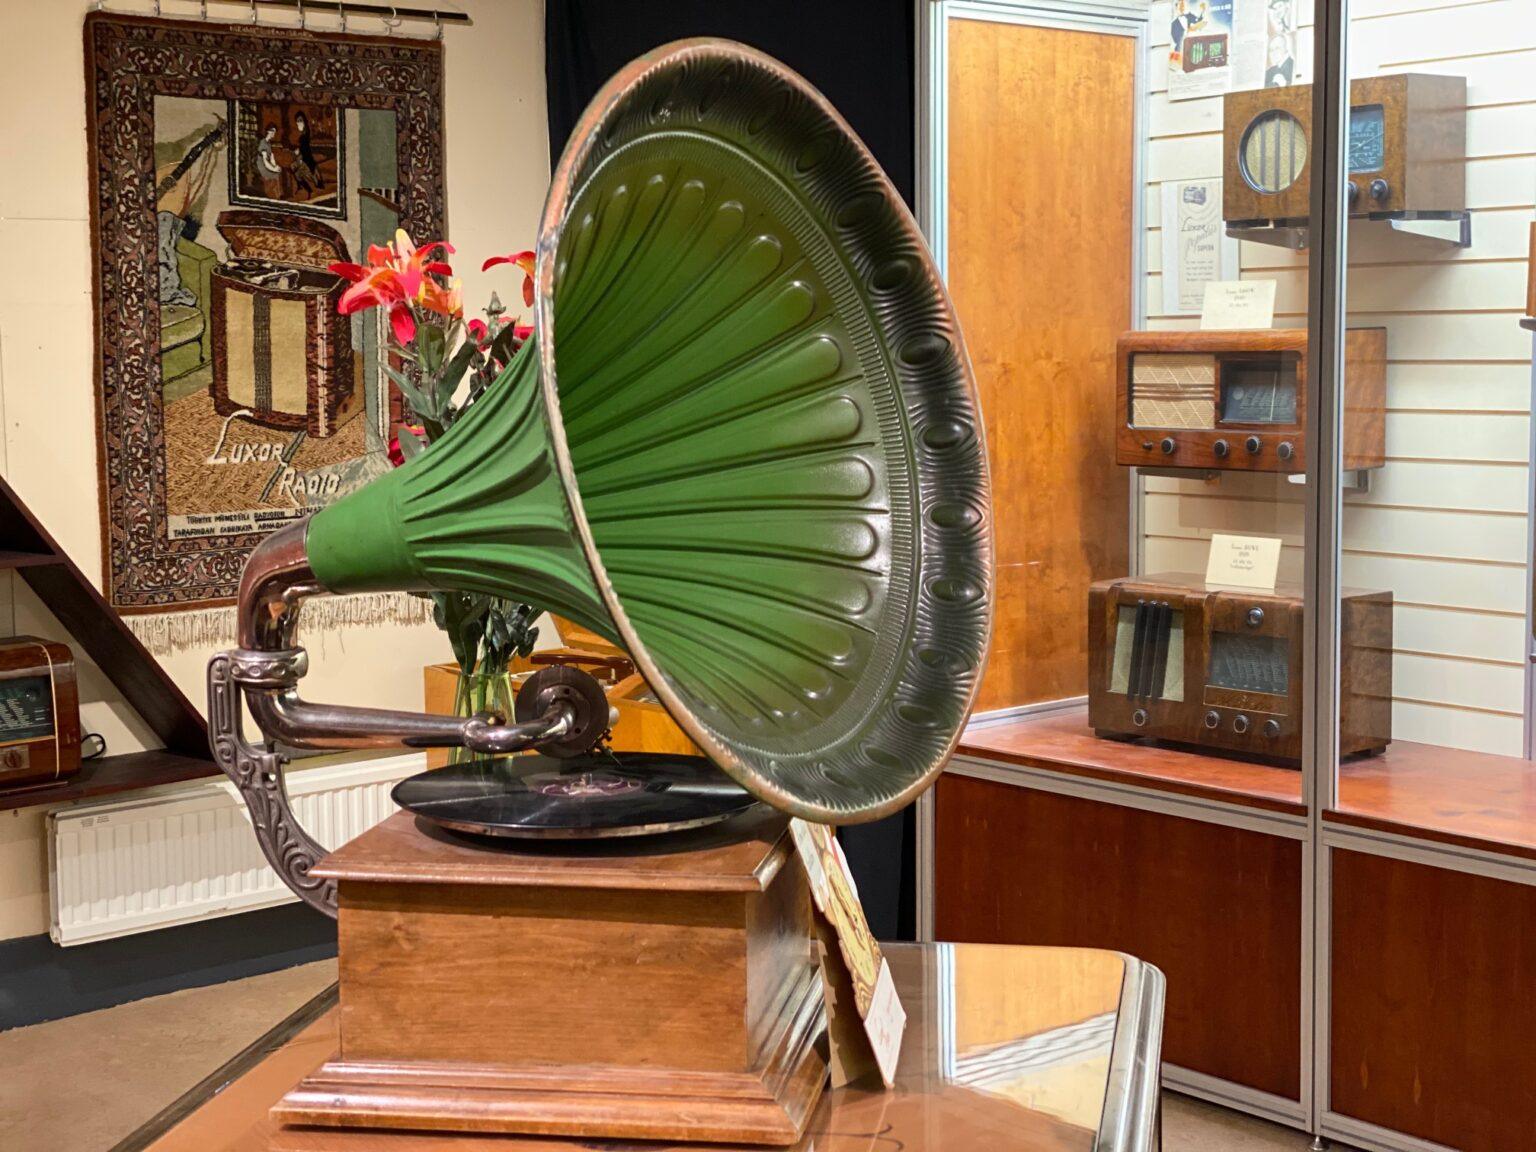 Gammal grön trattgramofon står inuti en museeilokal.